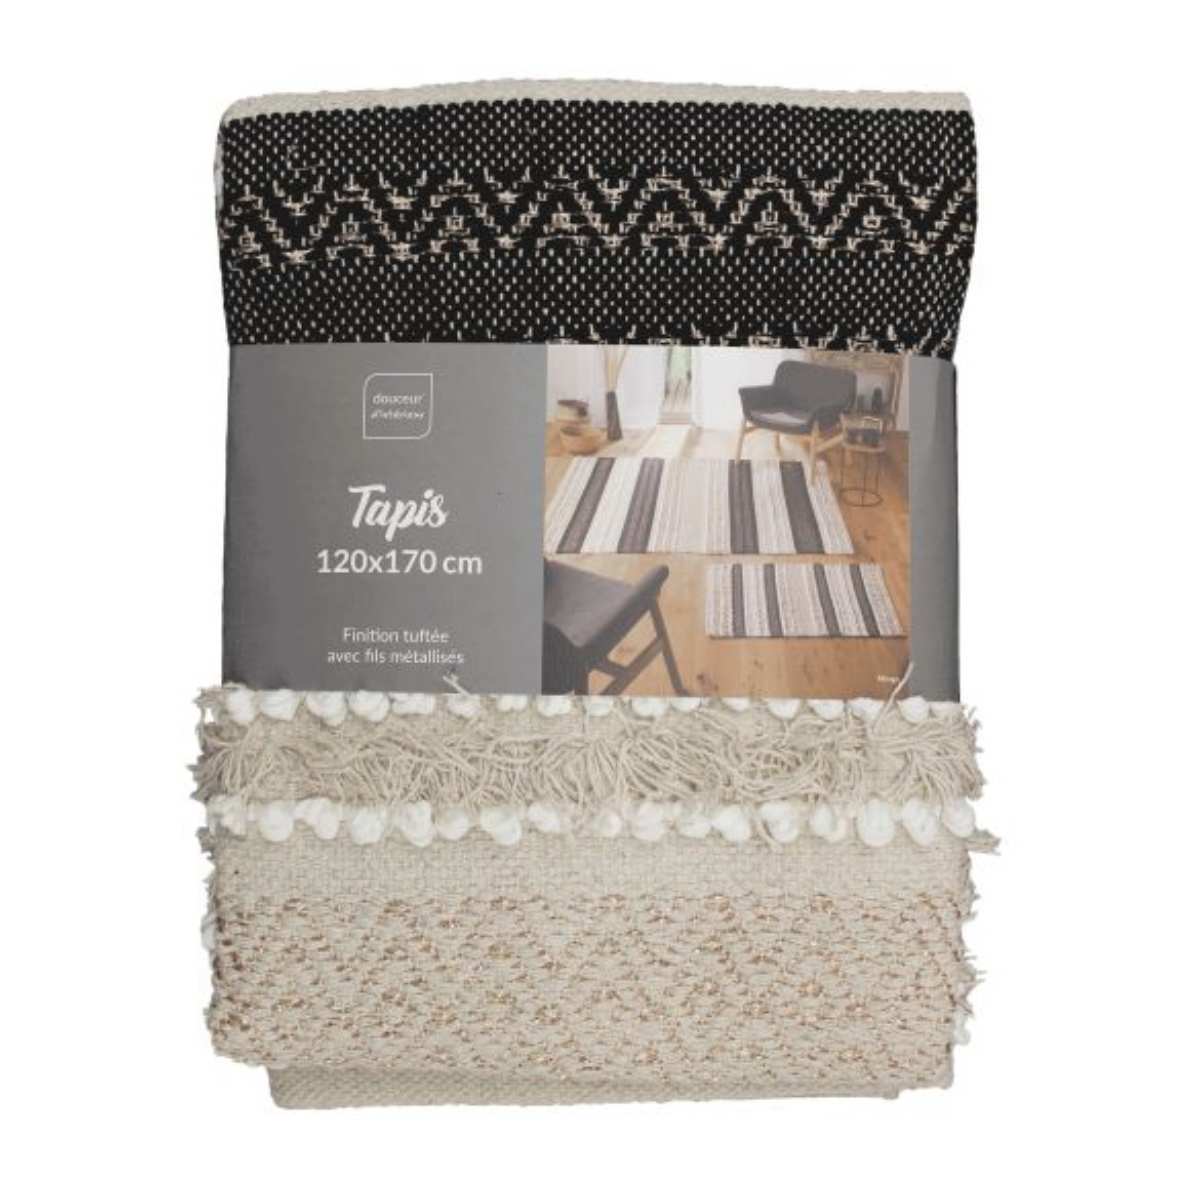 tapis-déco-120x170cm-naturel-noir-blanc-avec-fils-métallisés (3)